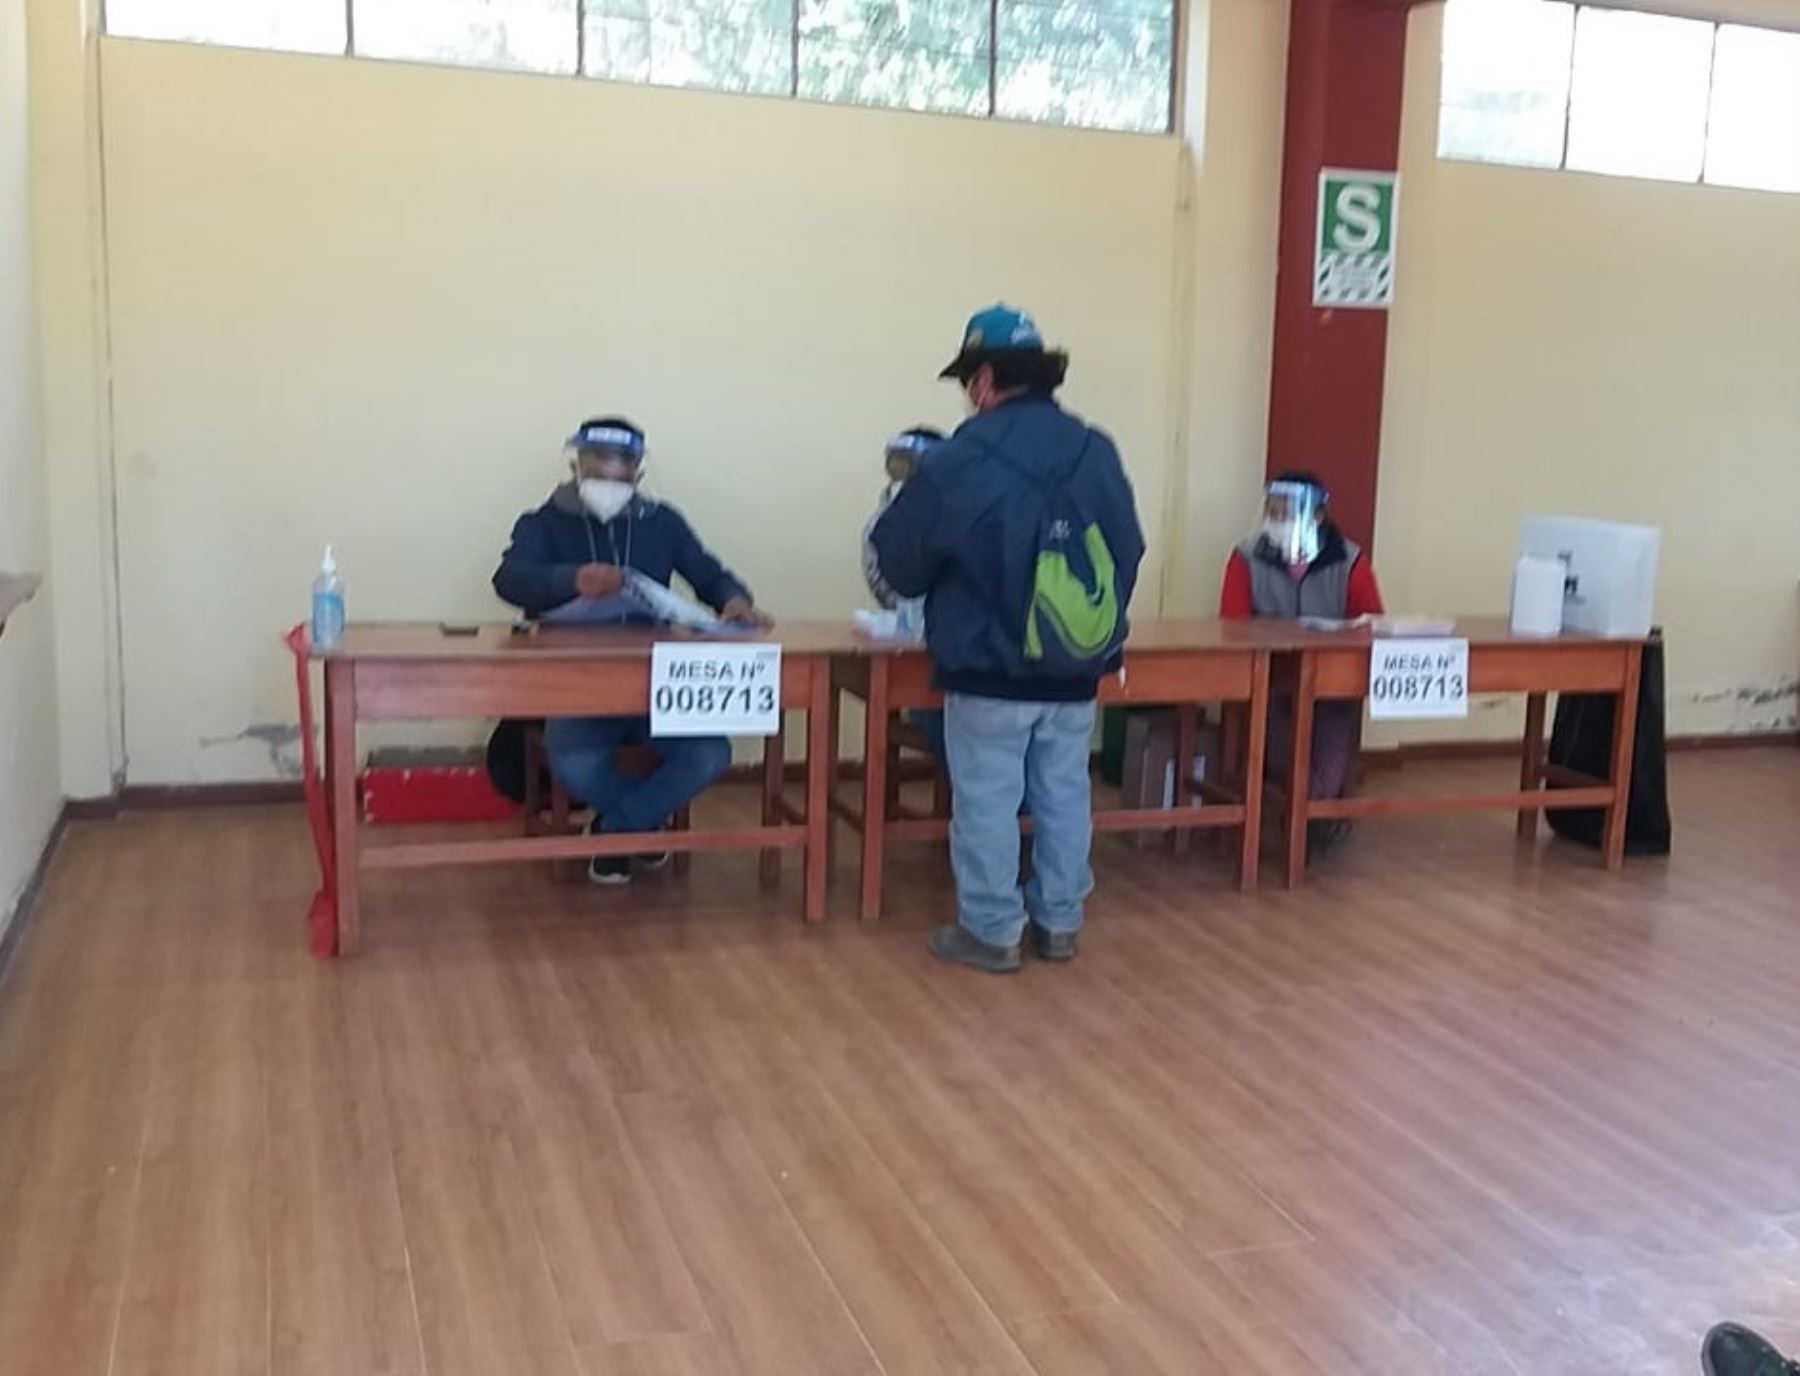 Primera mesa de sufragio se instaló en Arequipa a las 4:55 horas, informó la ONPE. ANDINA/Difusión